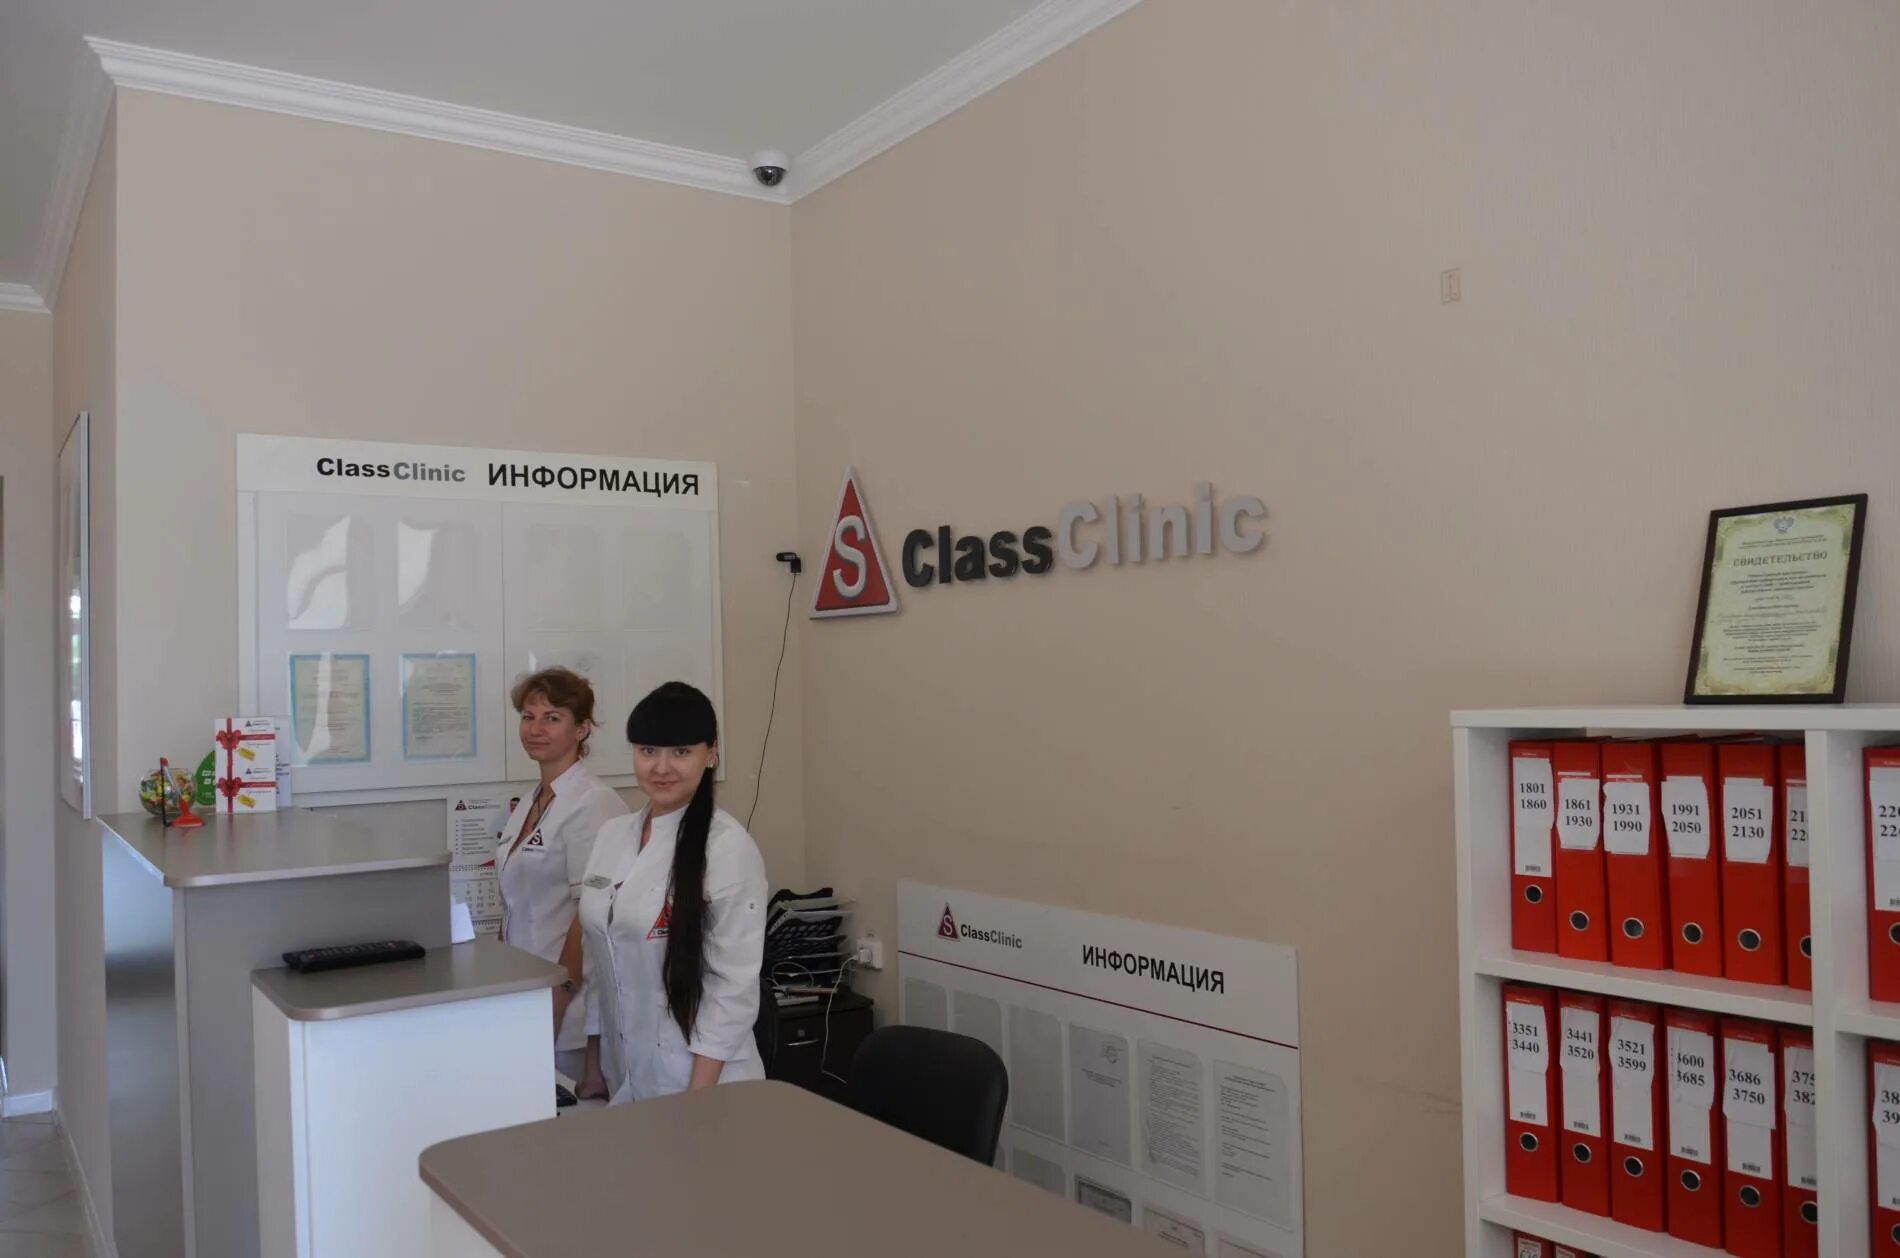 ЭС класс клиник Челябинск. S class Clinic Челябинск. ЭС класс клиник Волгоград. Волгоград s class клиника.